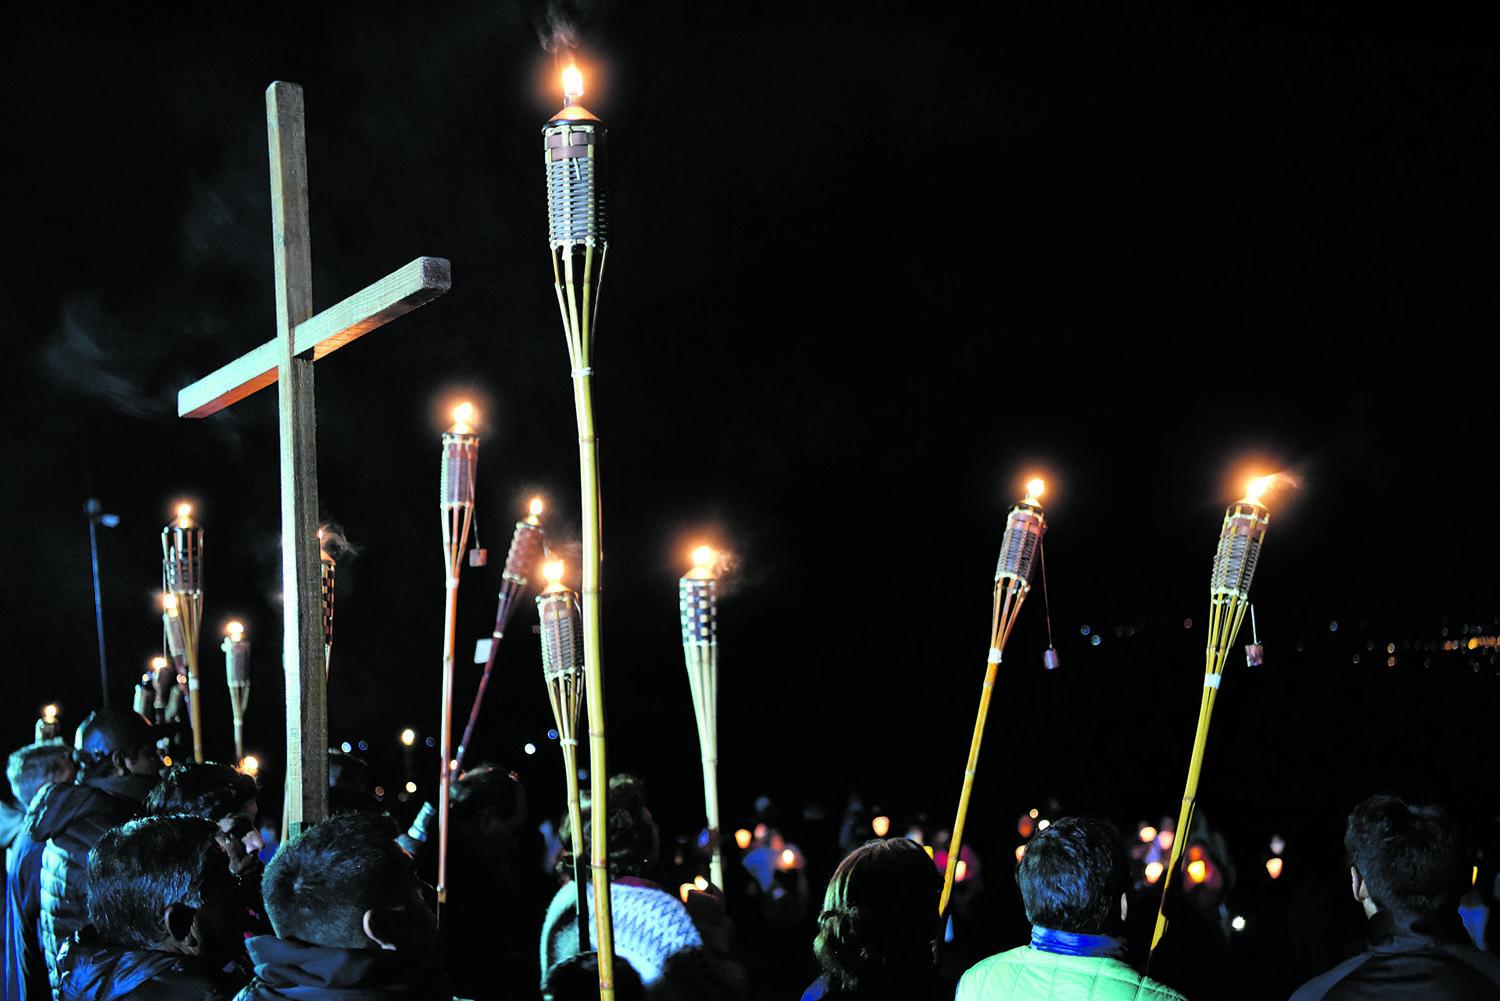 SAN JAVIER. A los pies del Cristo Bendicente, la Marcha de las Antorchas unió a los tucumanos en la oración. El Vía Crucis contó con un gran flujo de visitantes en el marco del turismo religioso.